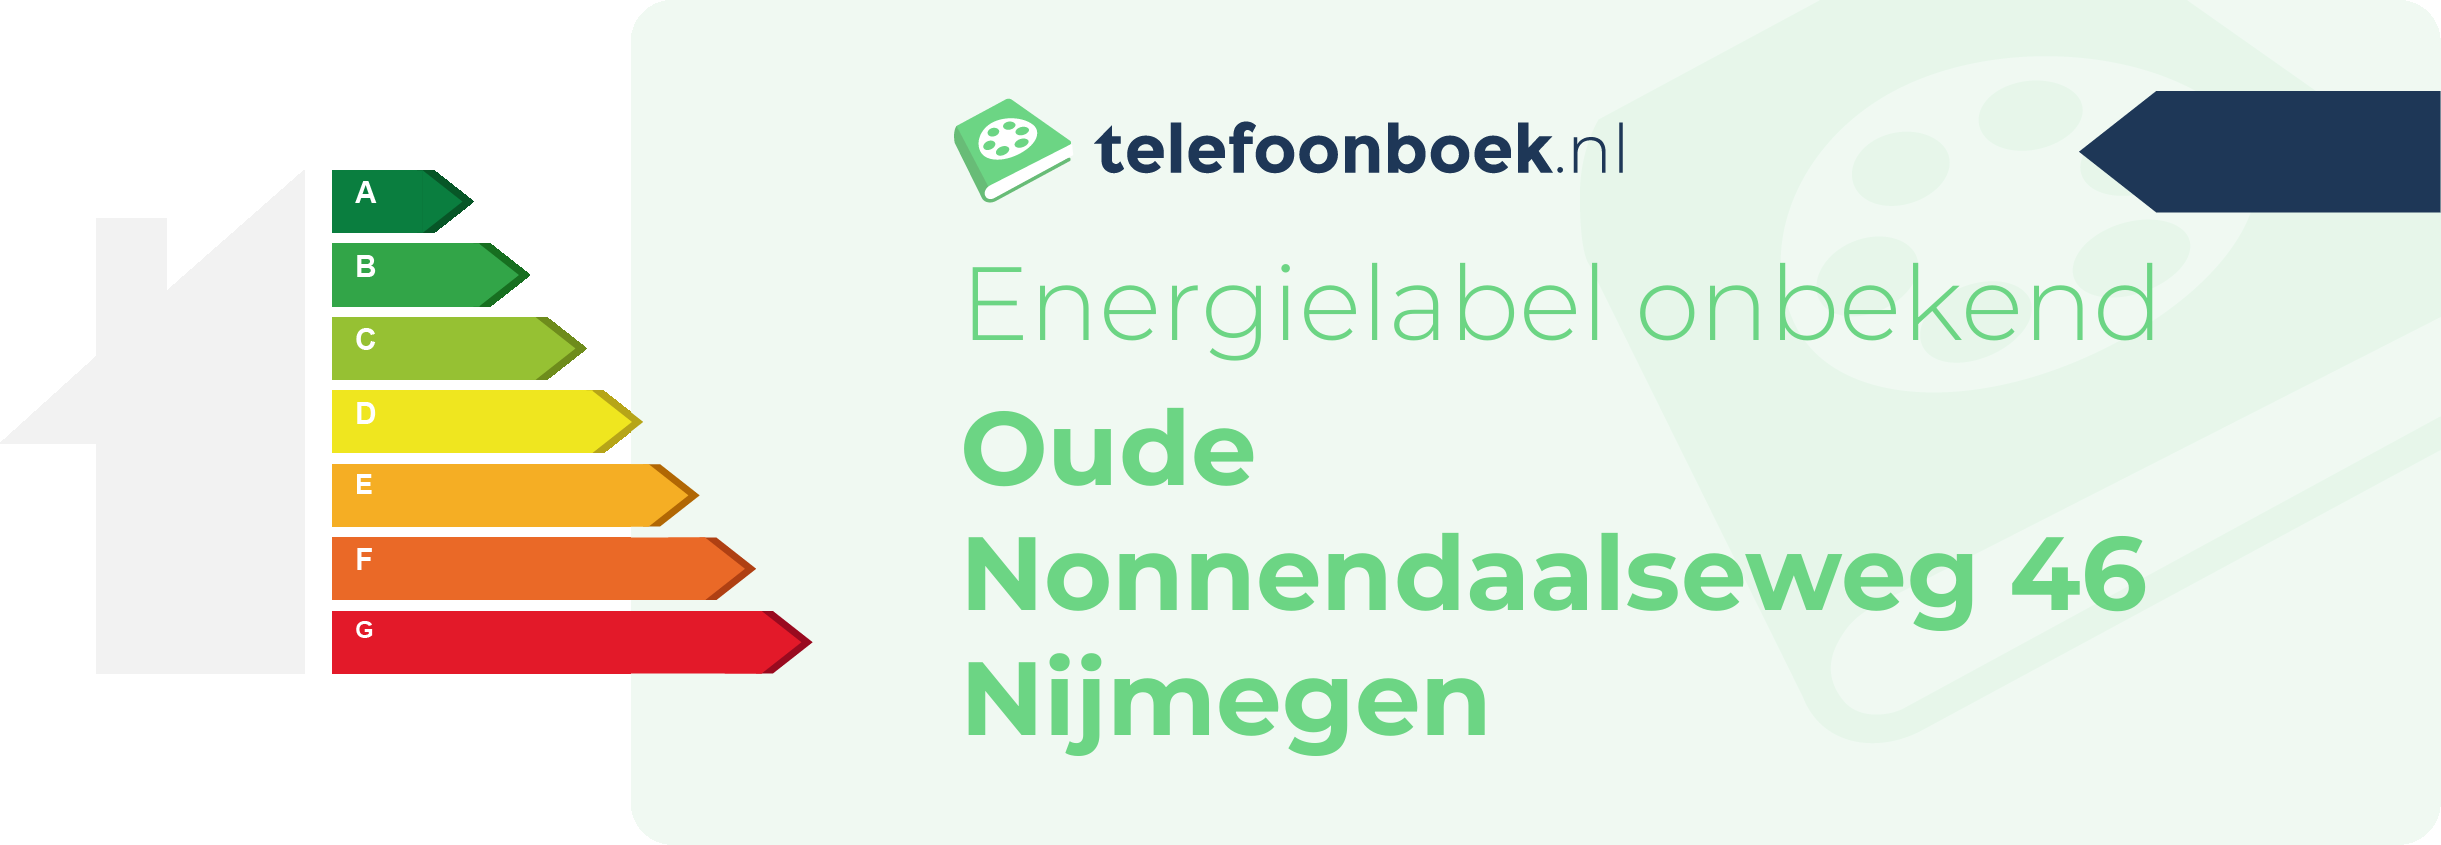 Energielabel Oude Nonnendaalseweg 46 Nijmegen